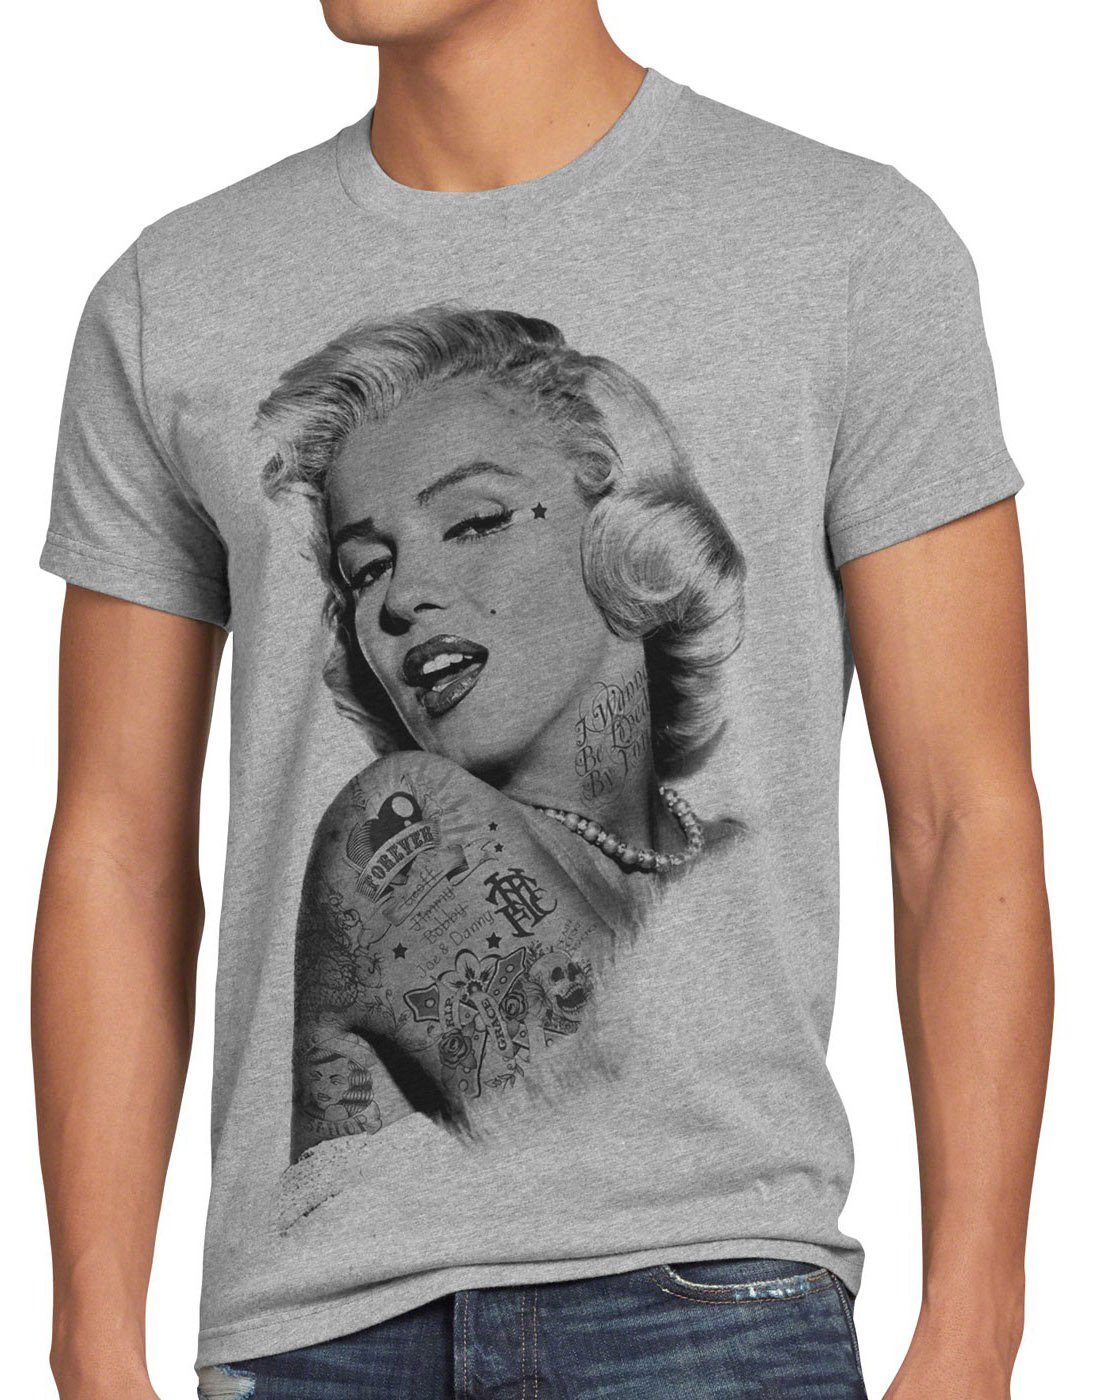 style3 Print-Shirt Herren T-Shirt Tattoo Marilyn inked rock punk star marylin monroe tätowiert gun grau meliert